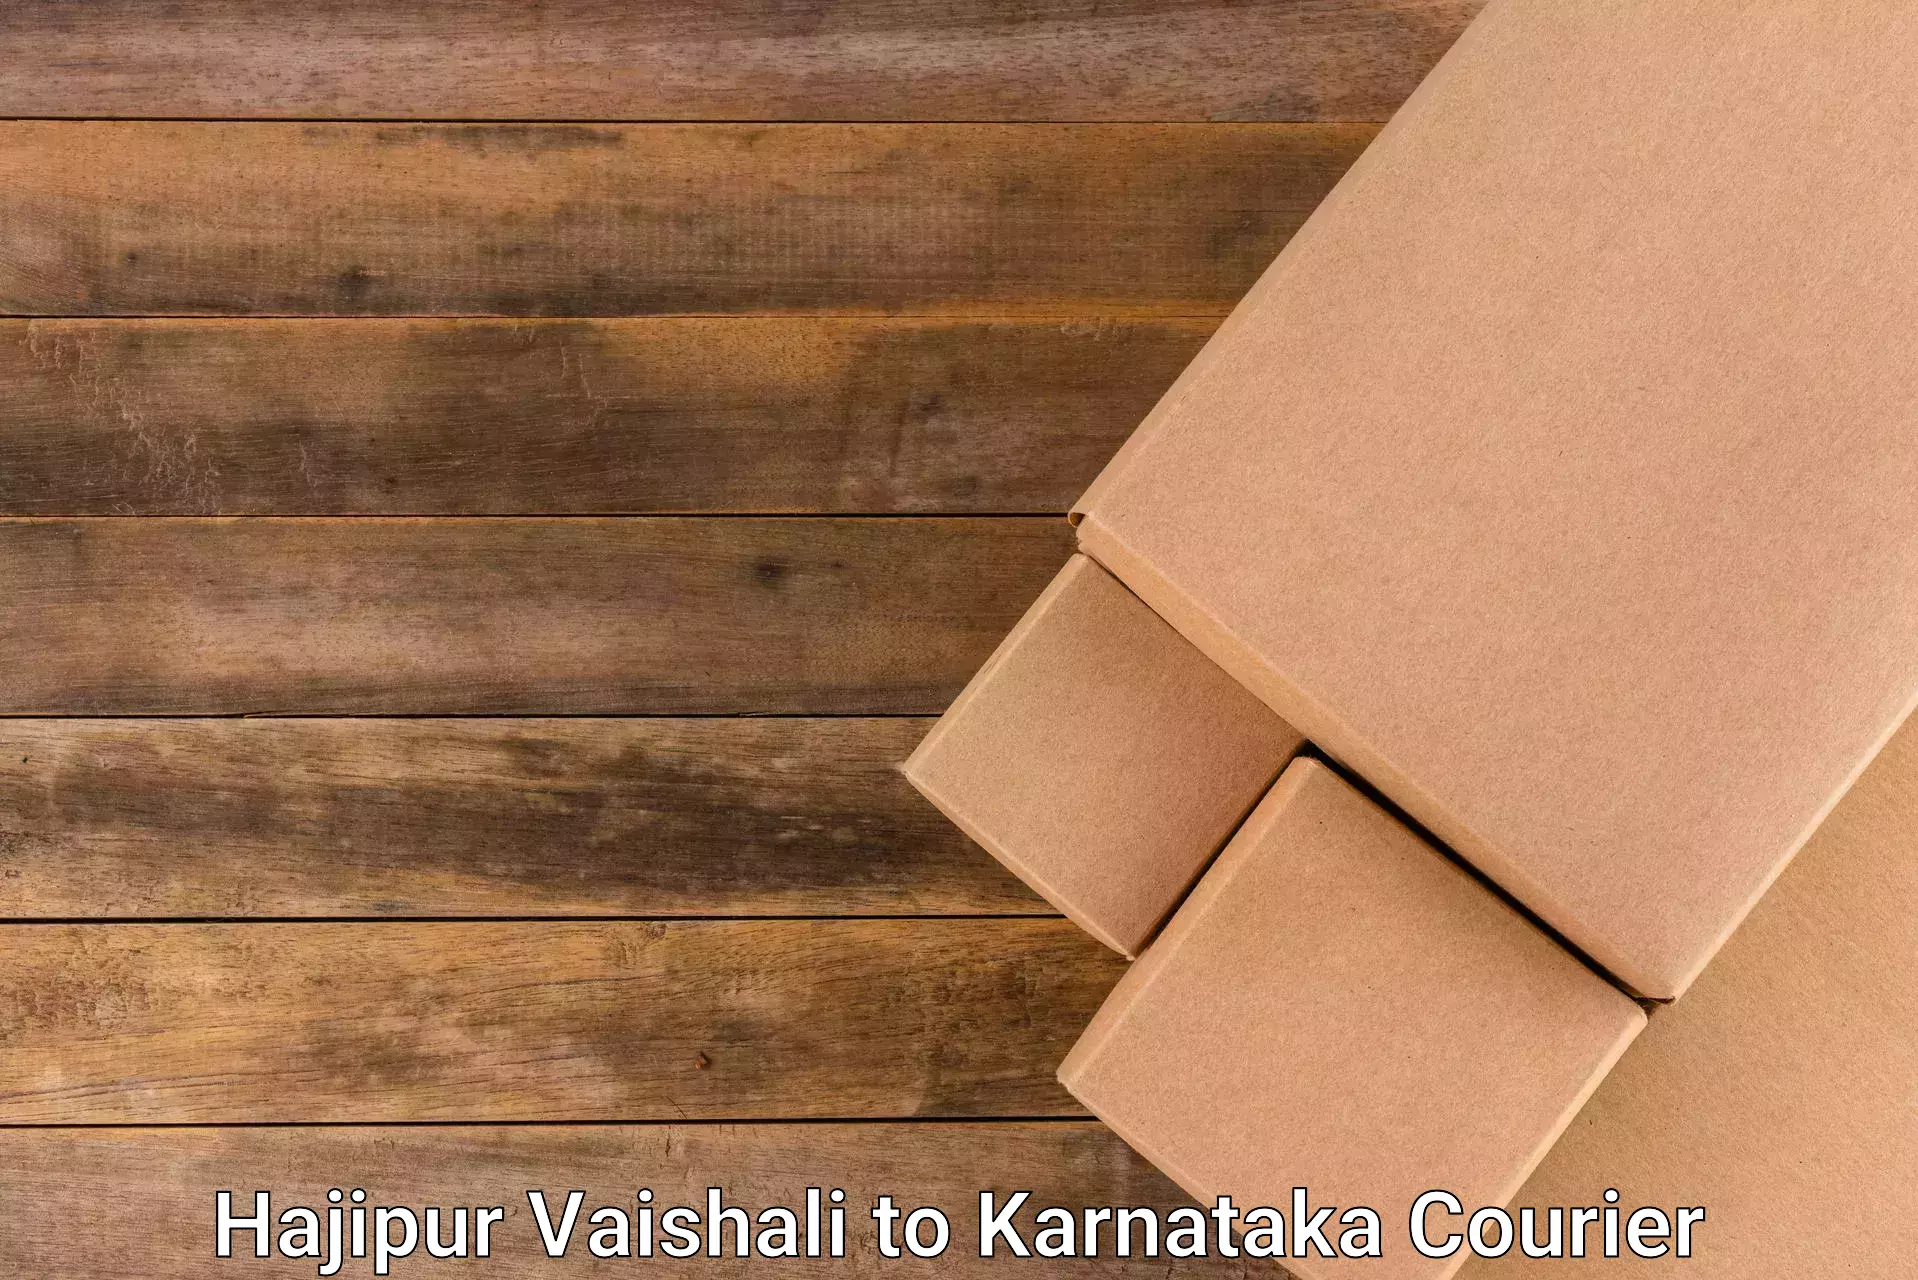 Digital shipping tools Hajipur Vaishali to Yelburga